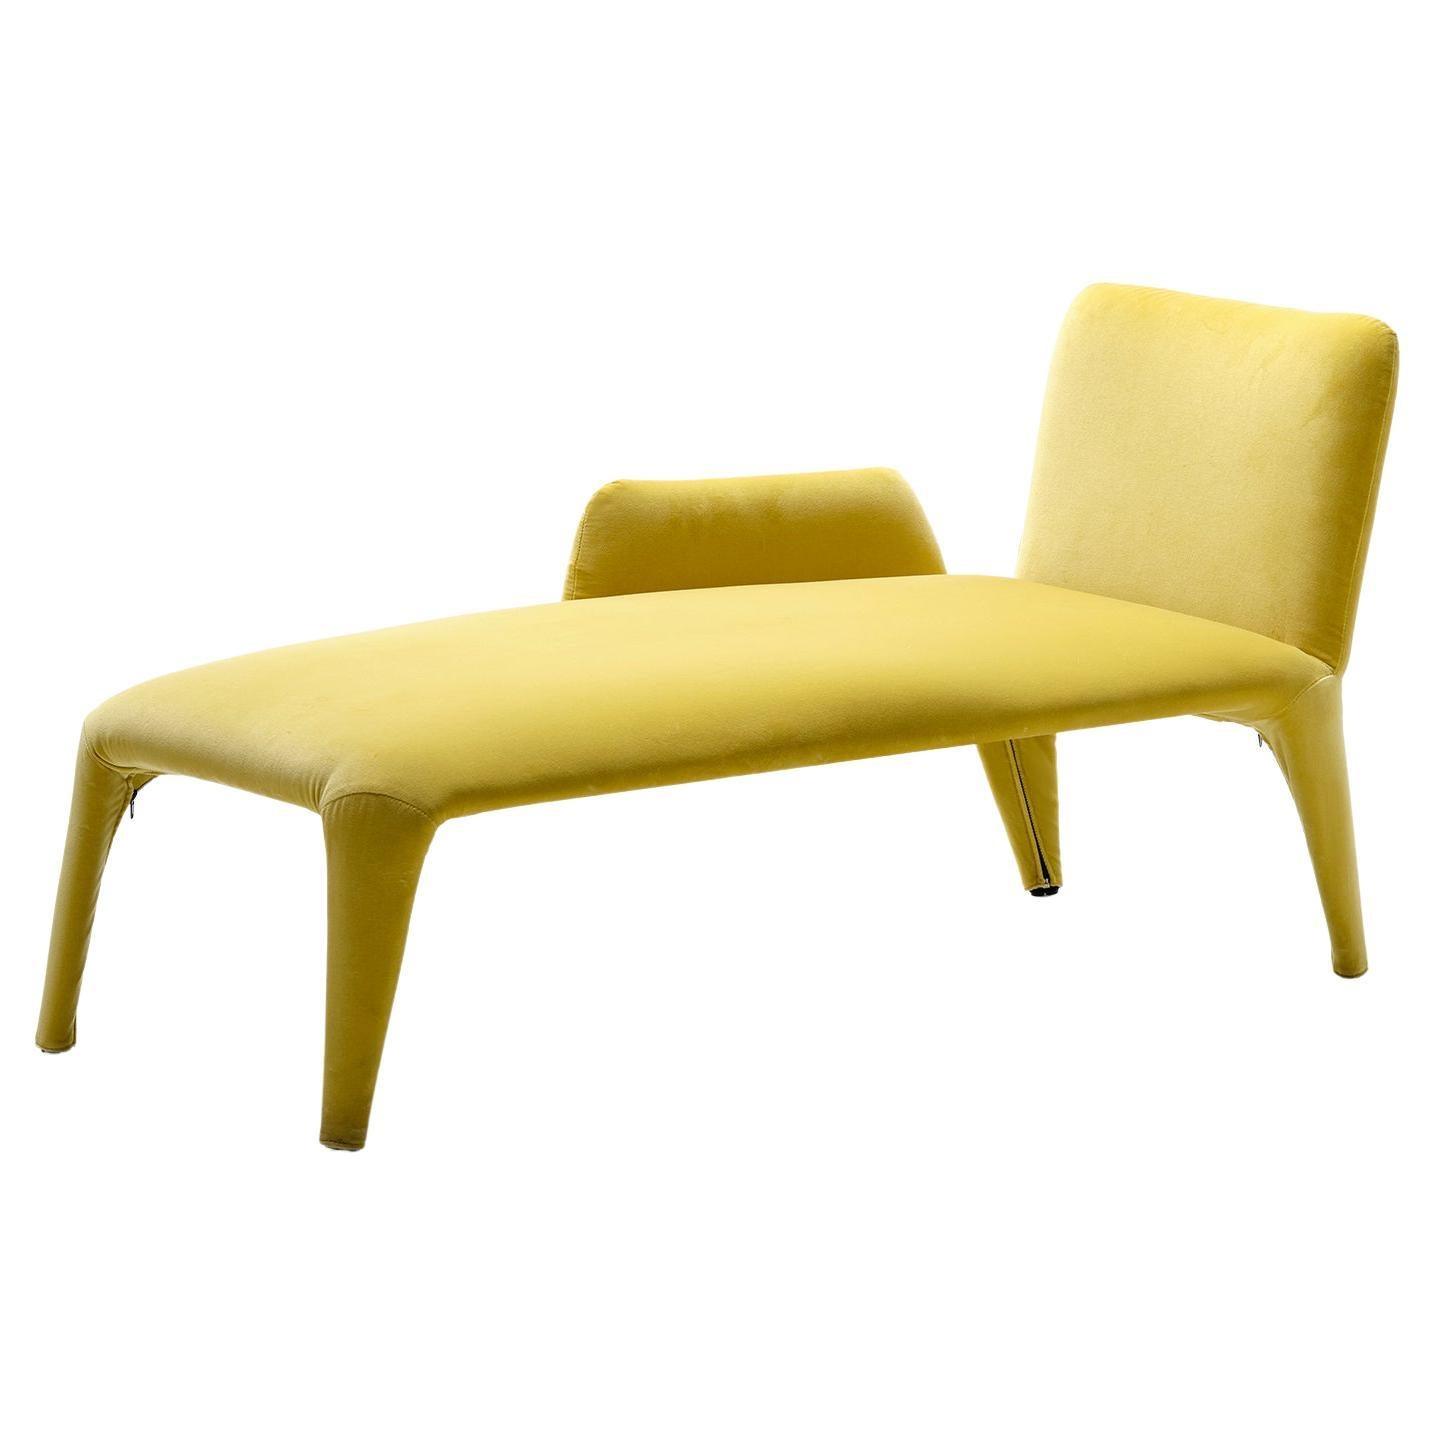 Chaise longue en textile moderne du 21e siècle avec couvercle amovible